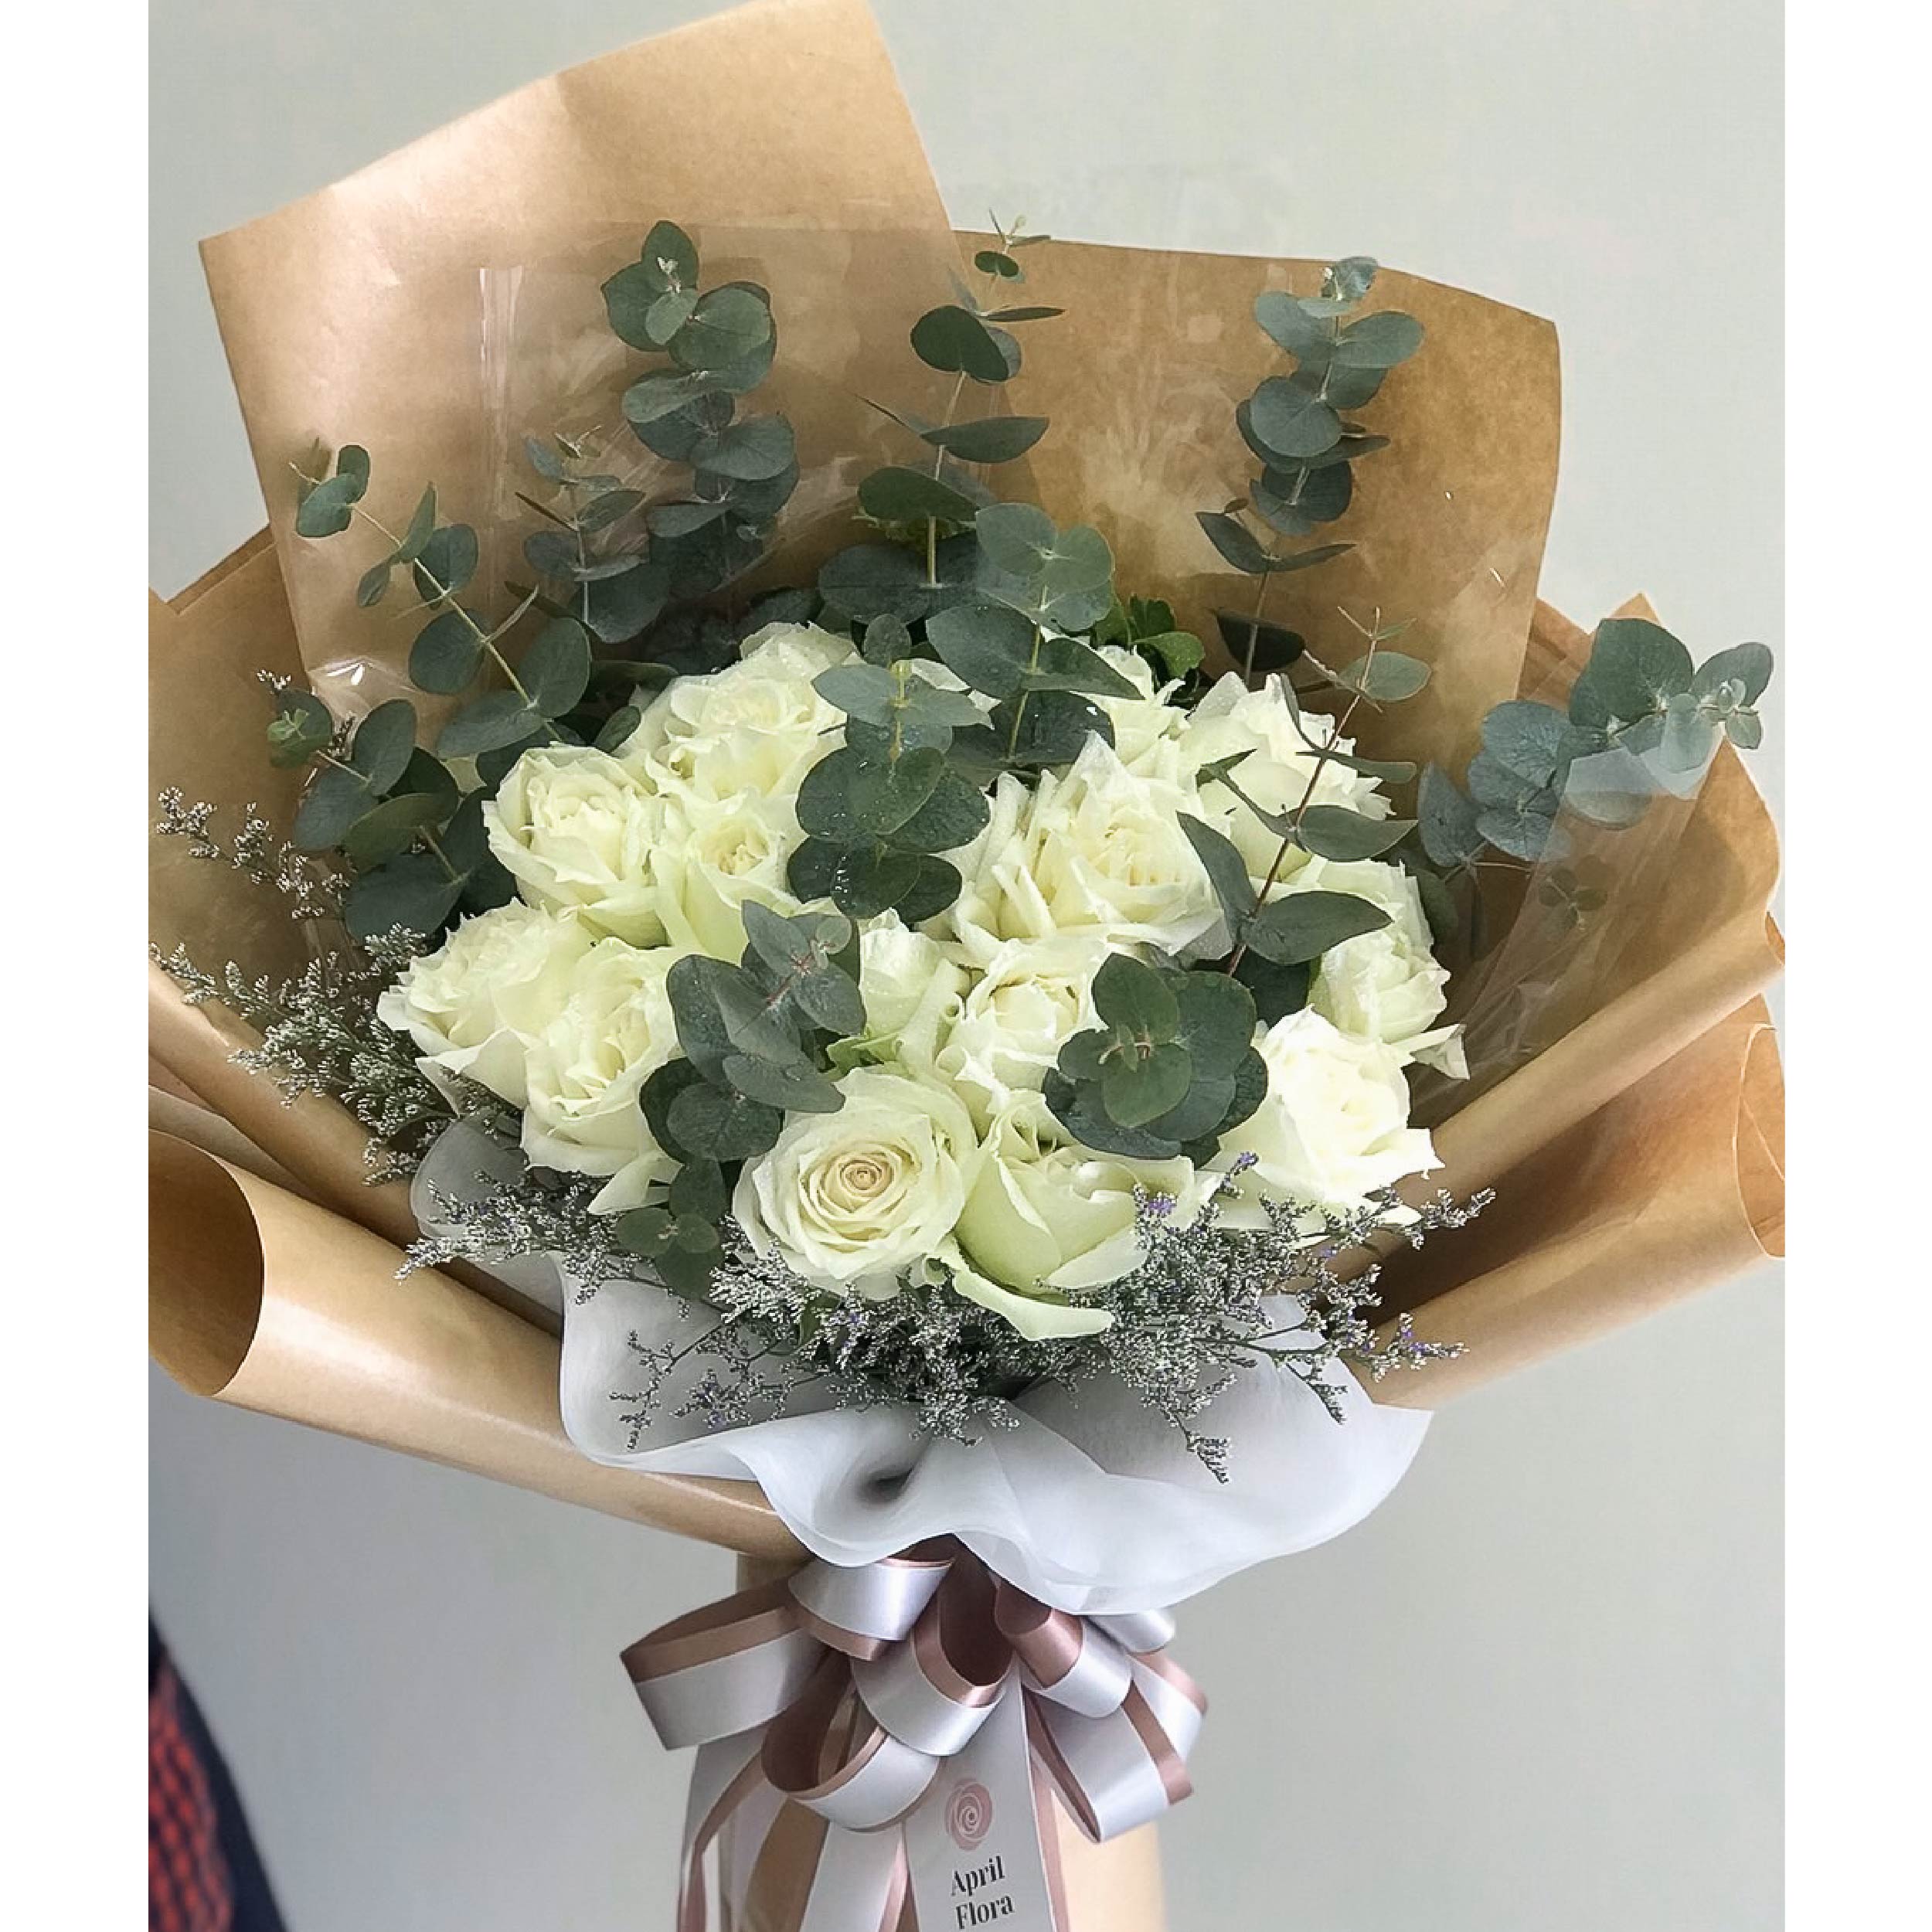 20 white roses vintage style bouquet - Phuket